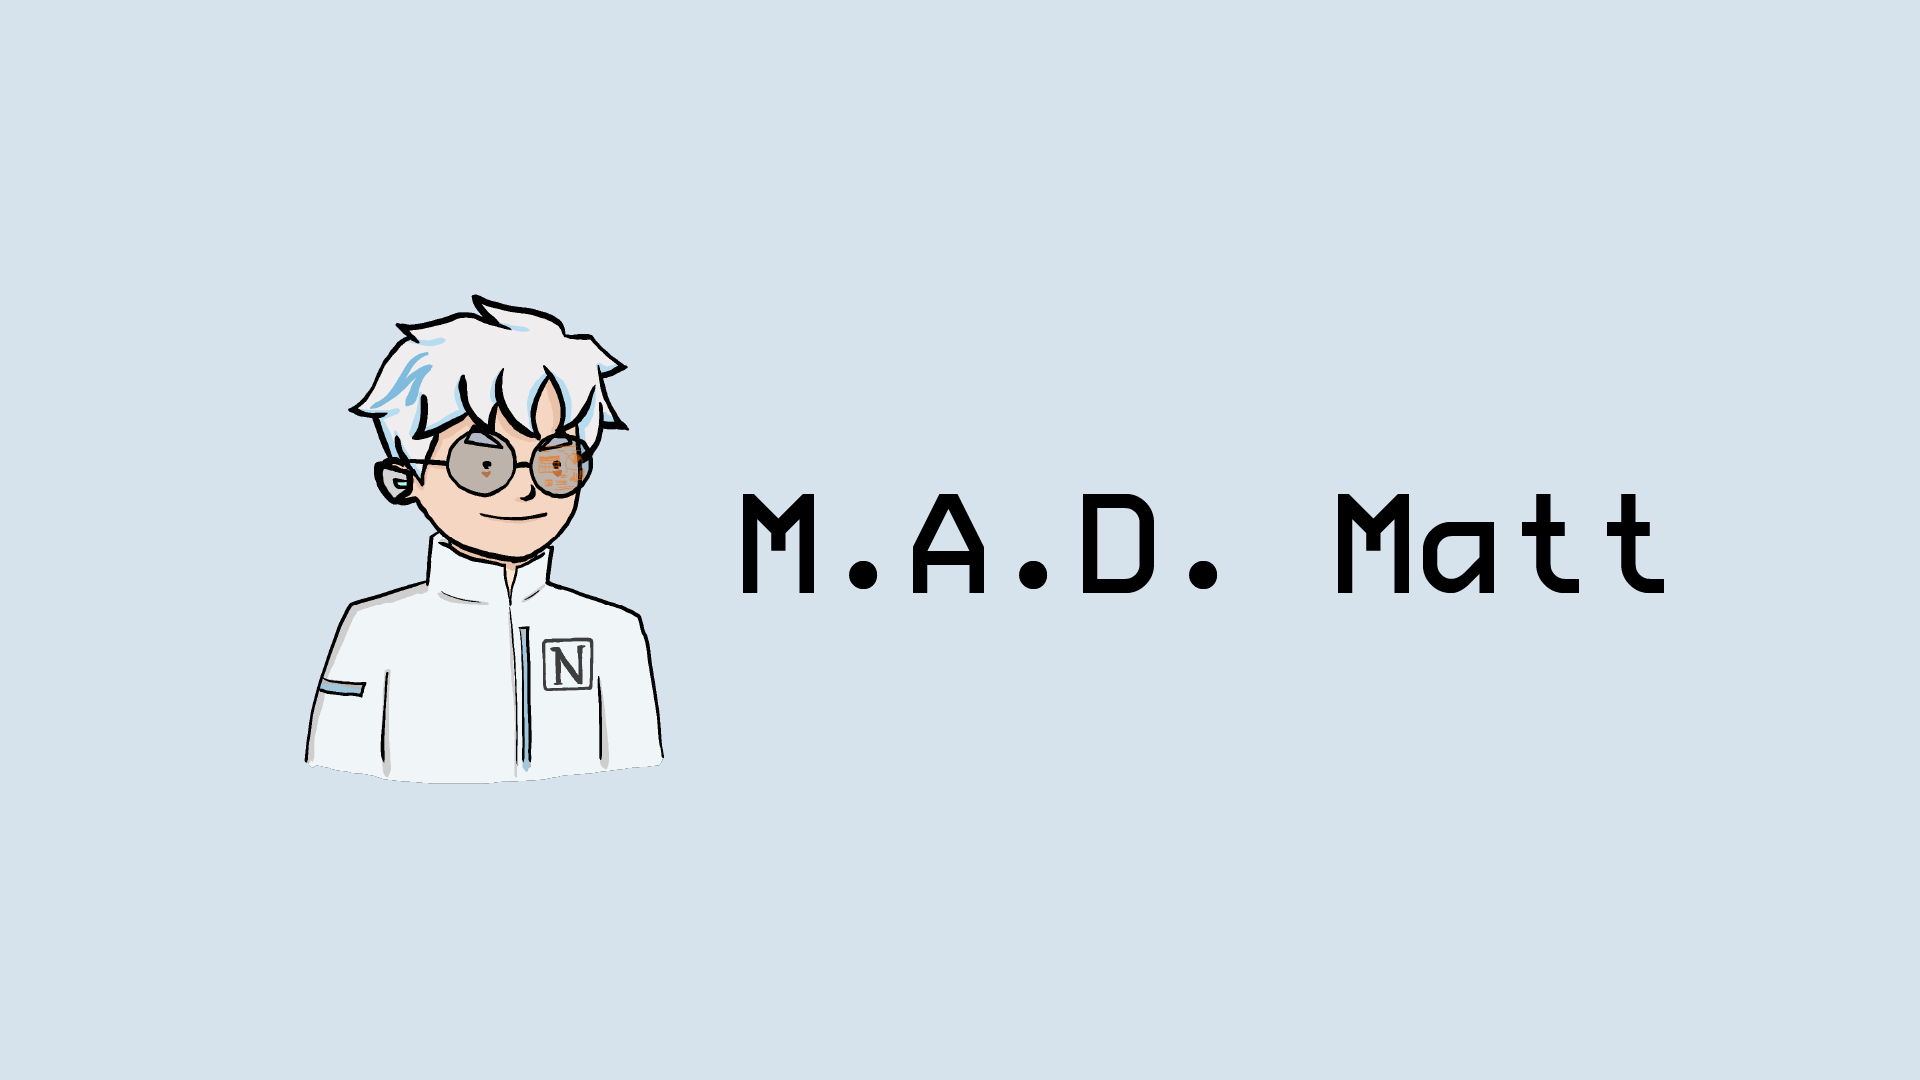 M.A.D. Matt